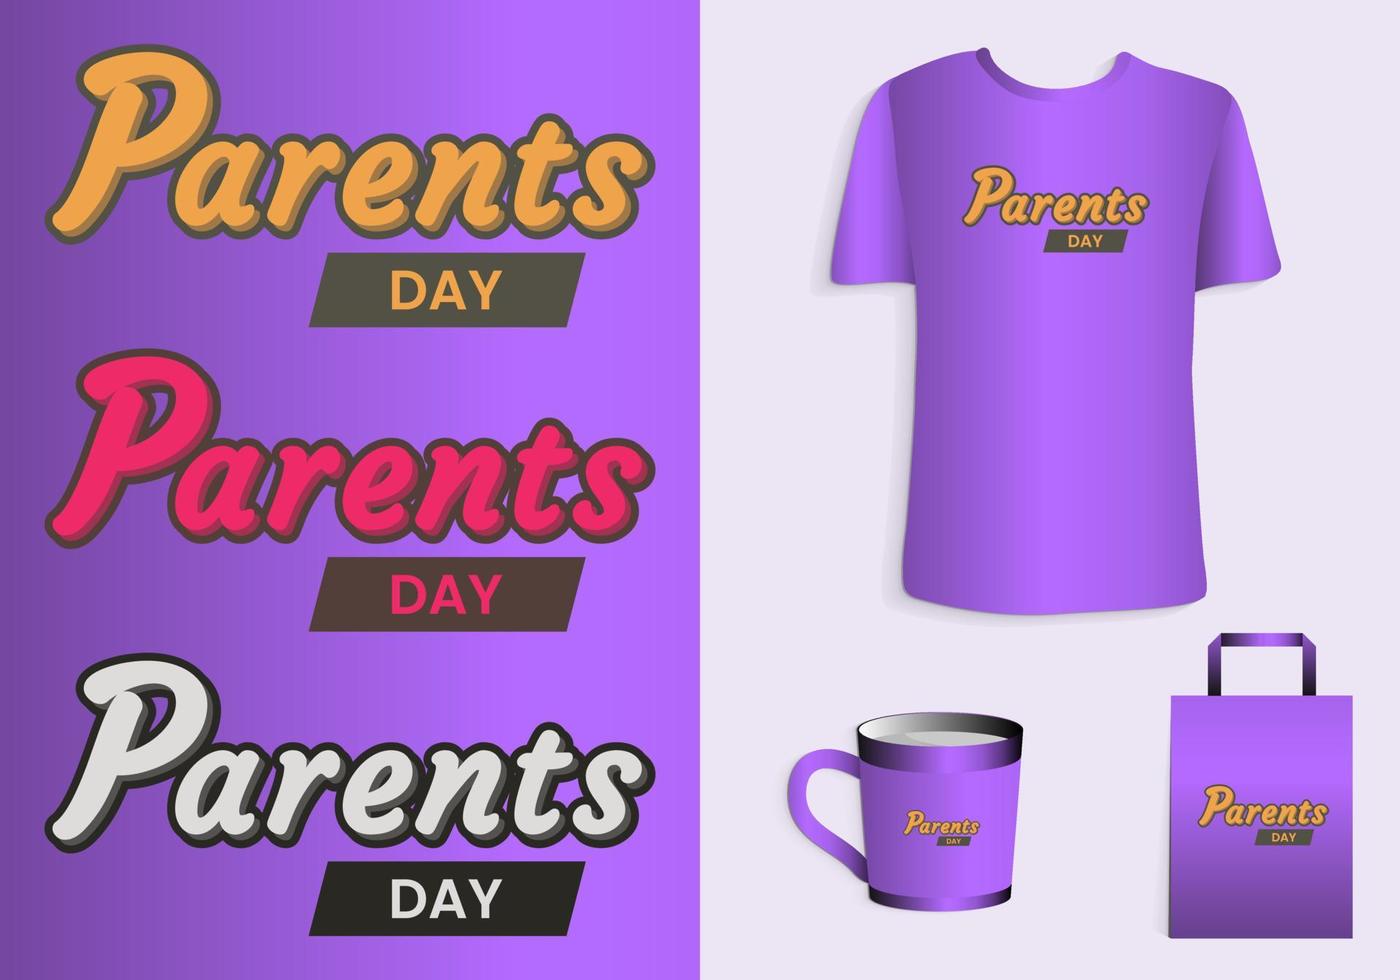 föräldrar dag. typografi affisch, t-shirt, mugg, toto väska, handelsvaror skriva ut design. vektor